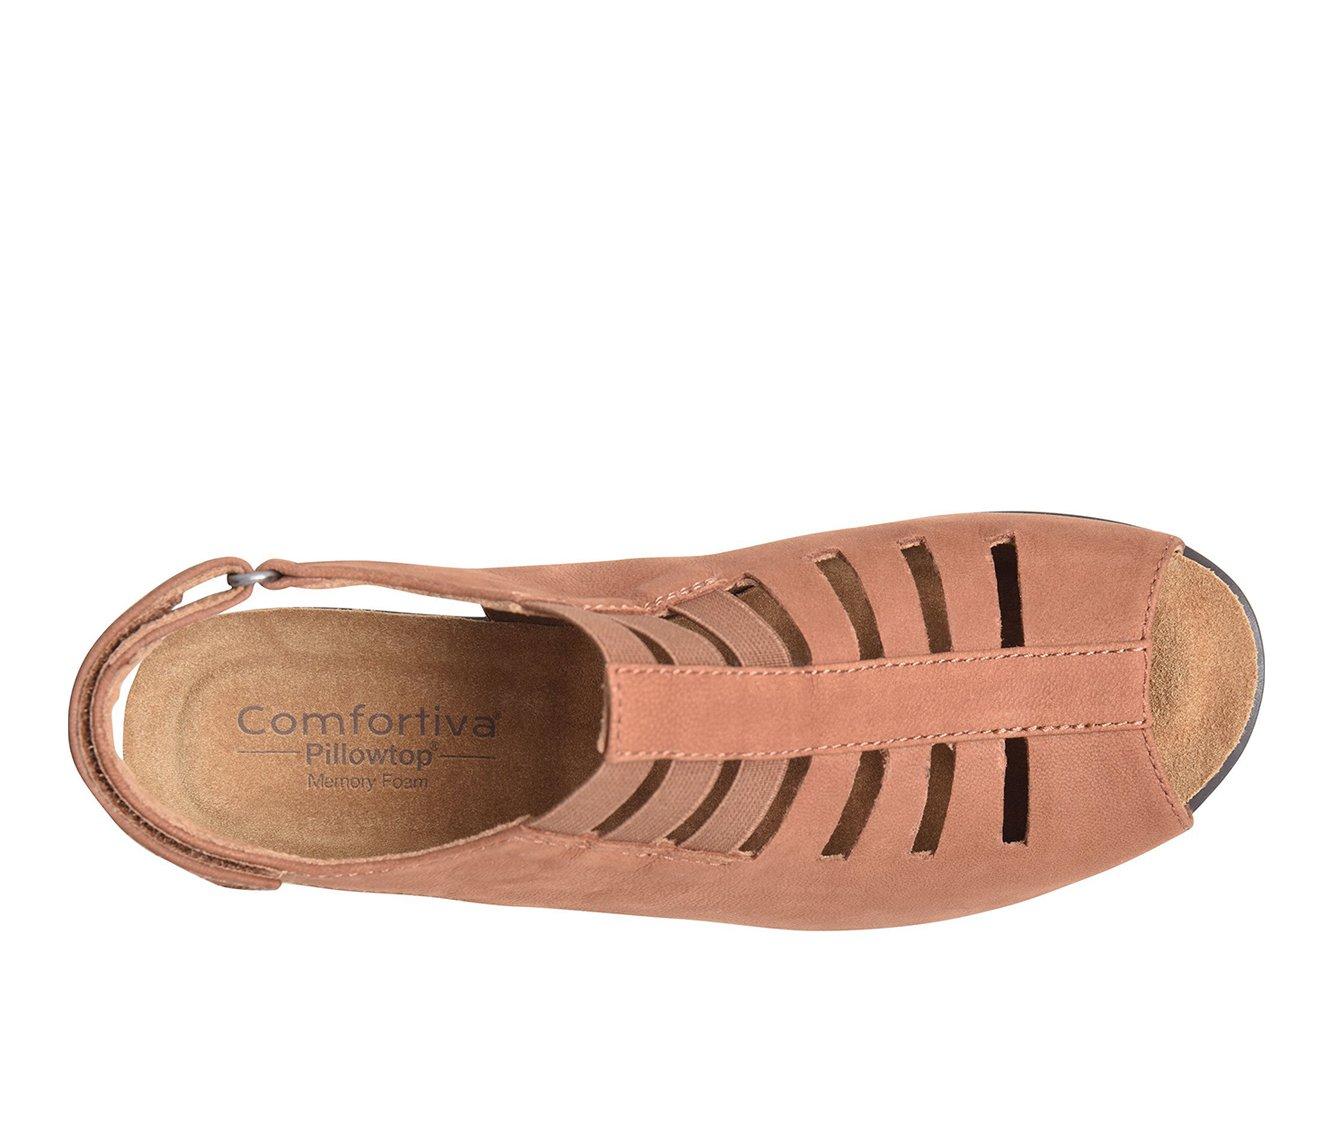 Women's Comfortiva Alana Wedge Sandals